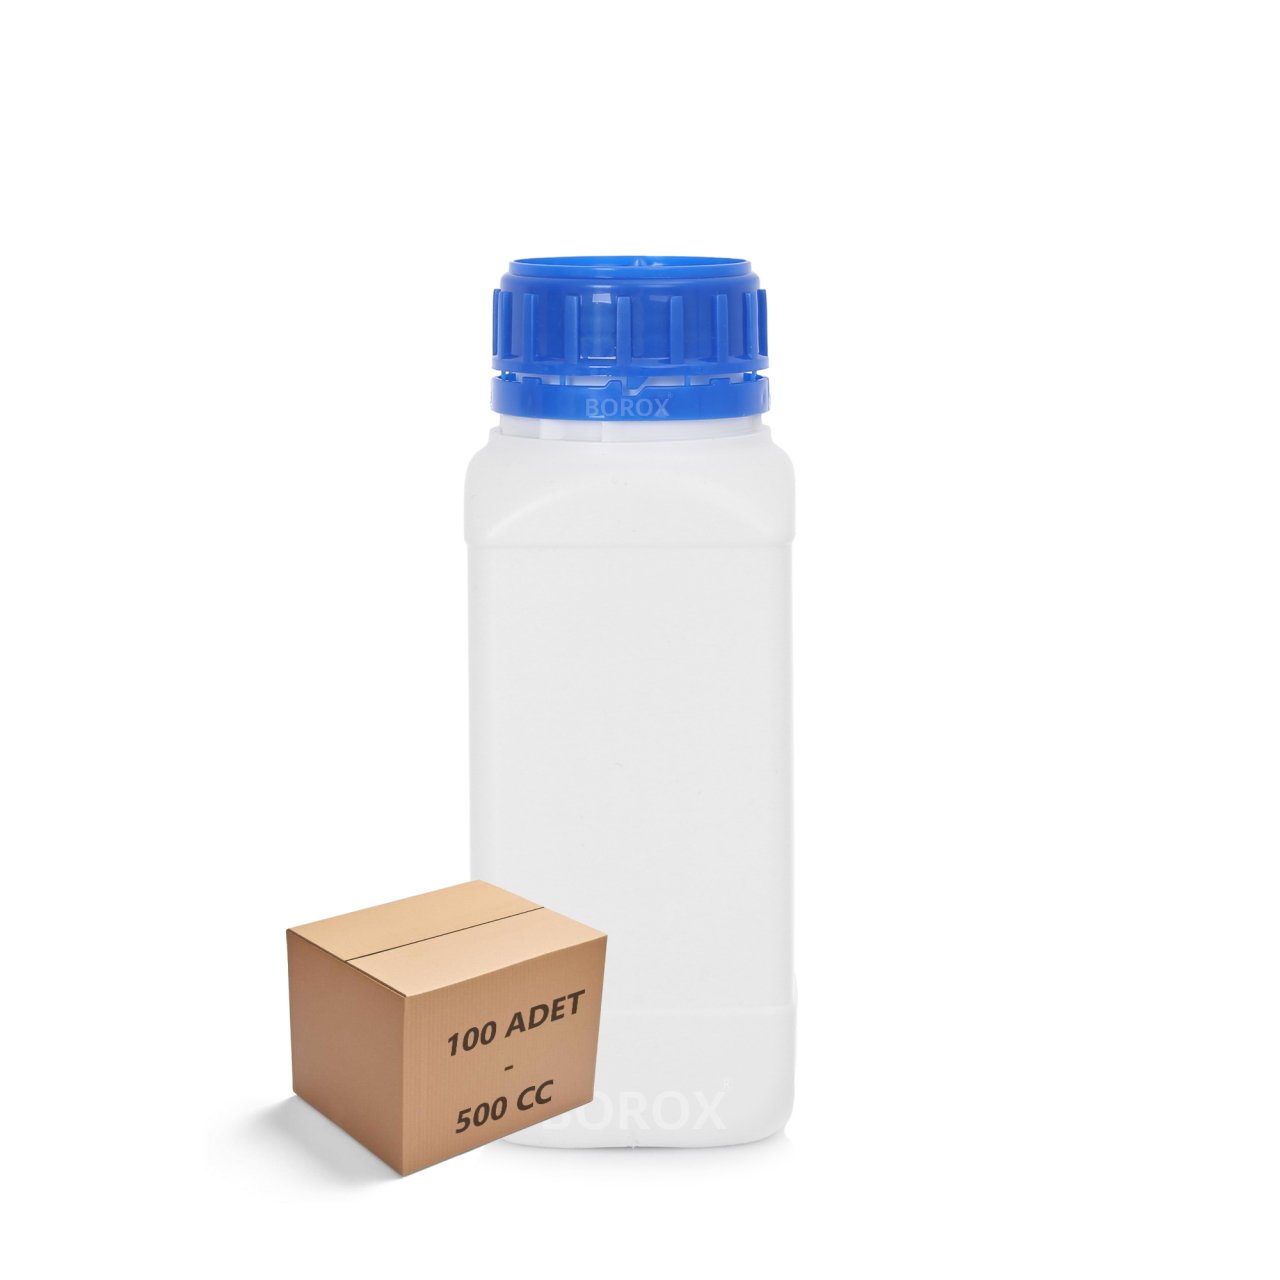 Borox Plastik Kare Şişe 500 ml - Mavi Kapaklı Şişe 100 Adet